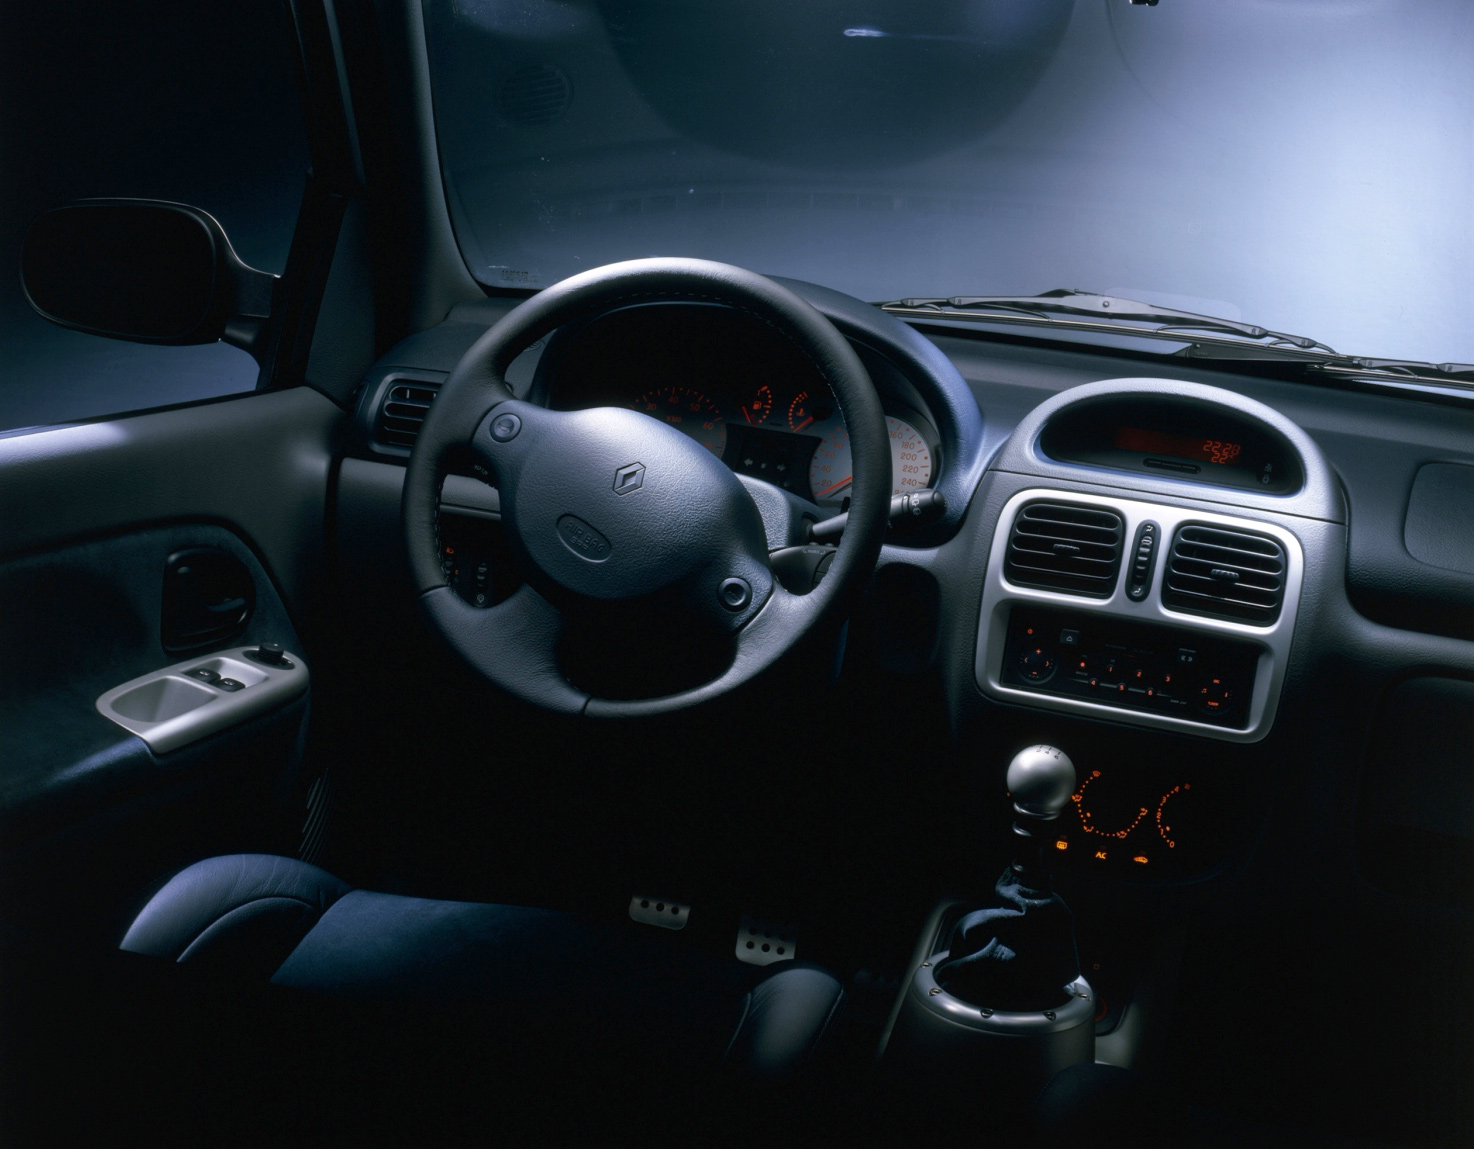 Interior press image of Renault Clio V6.